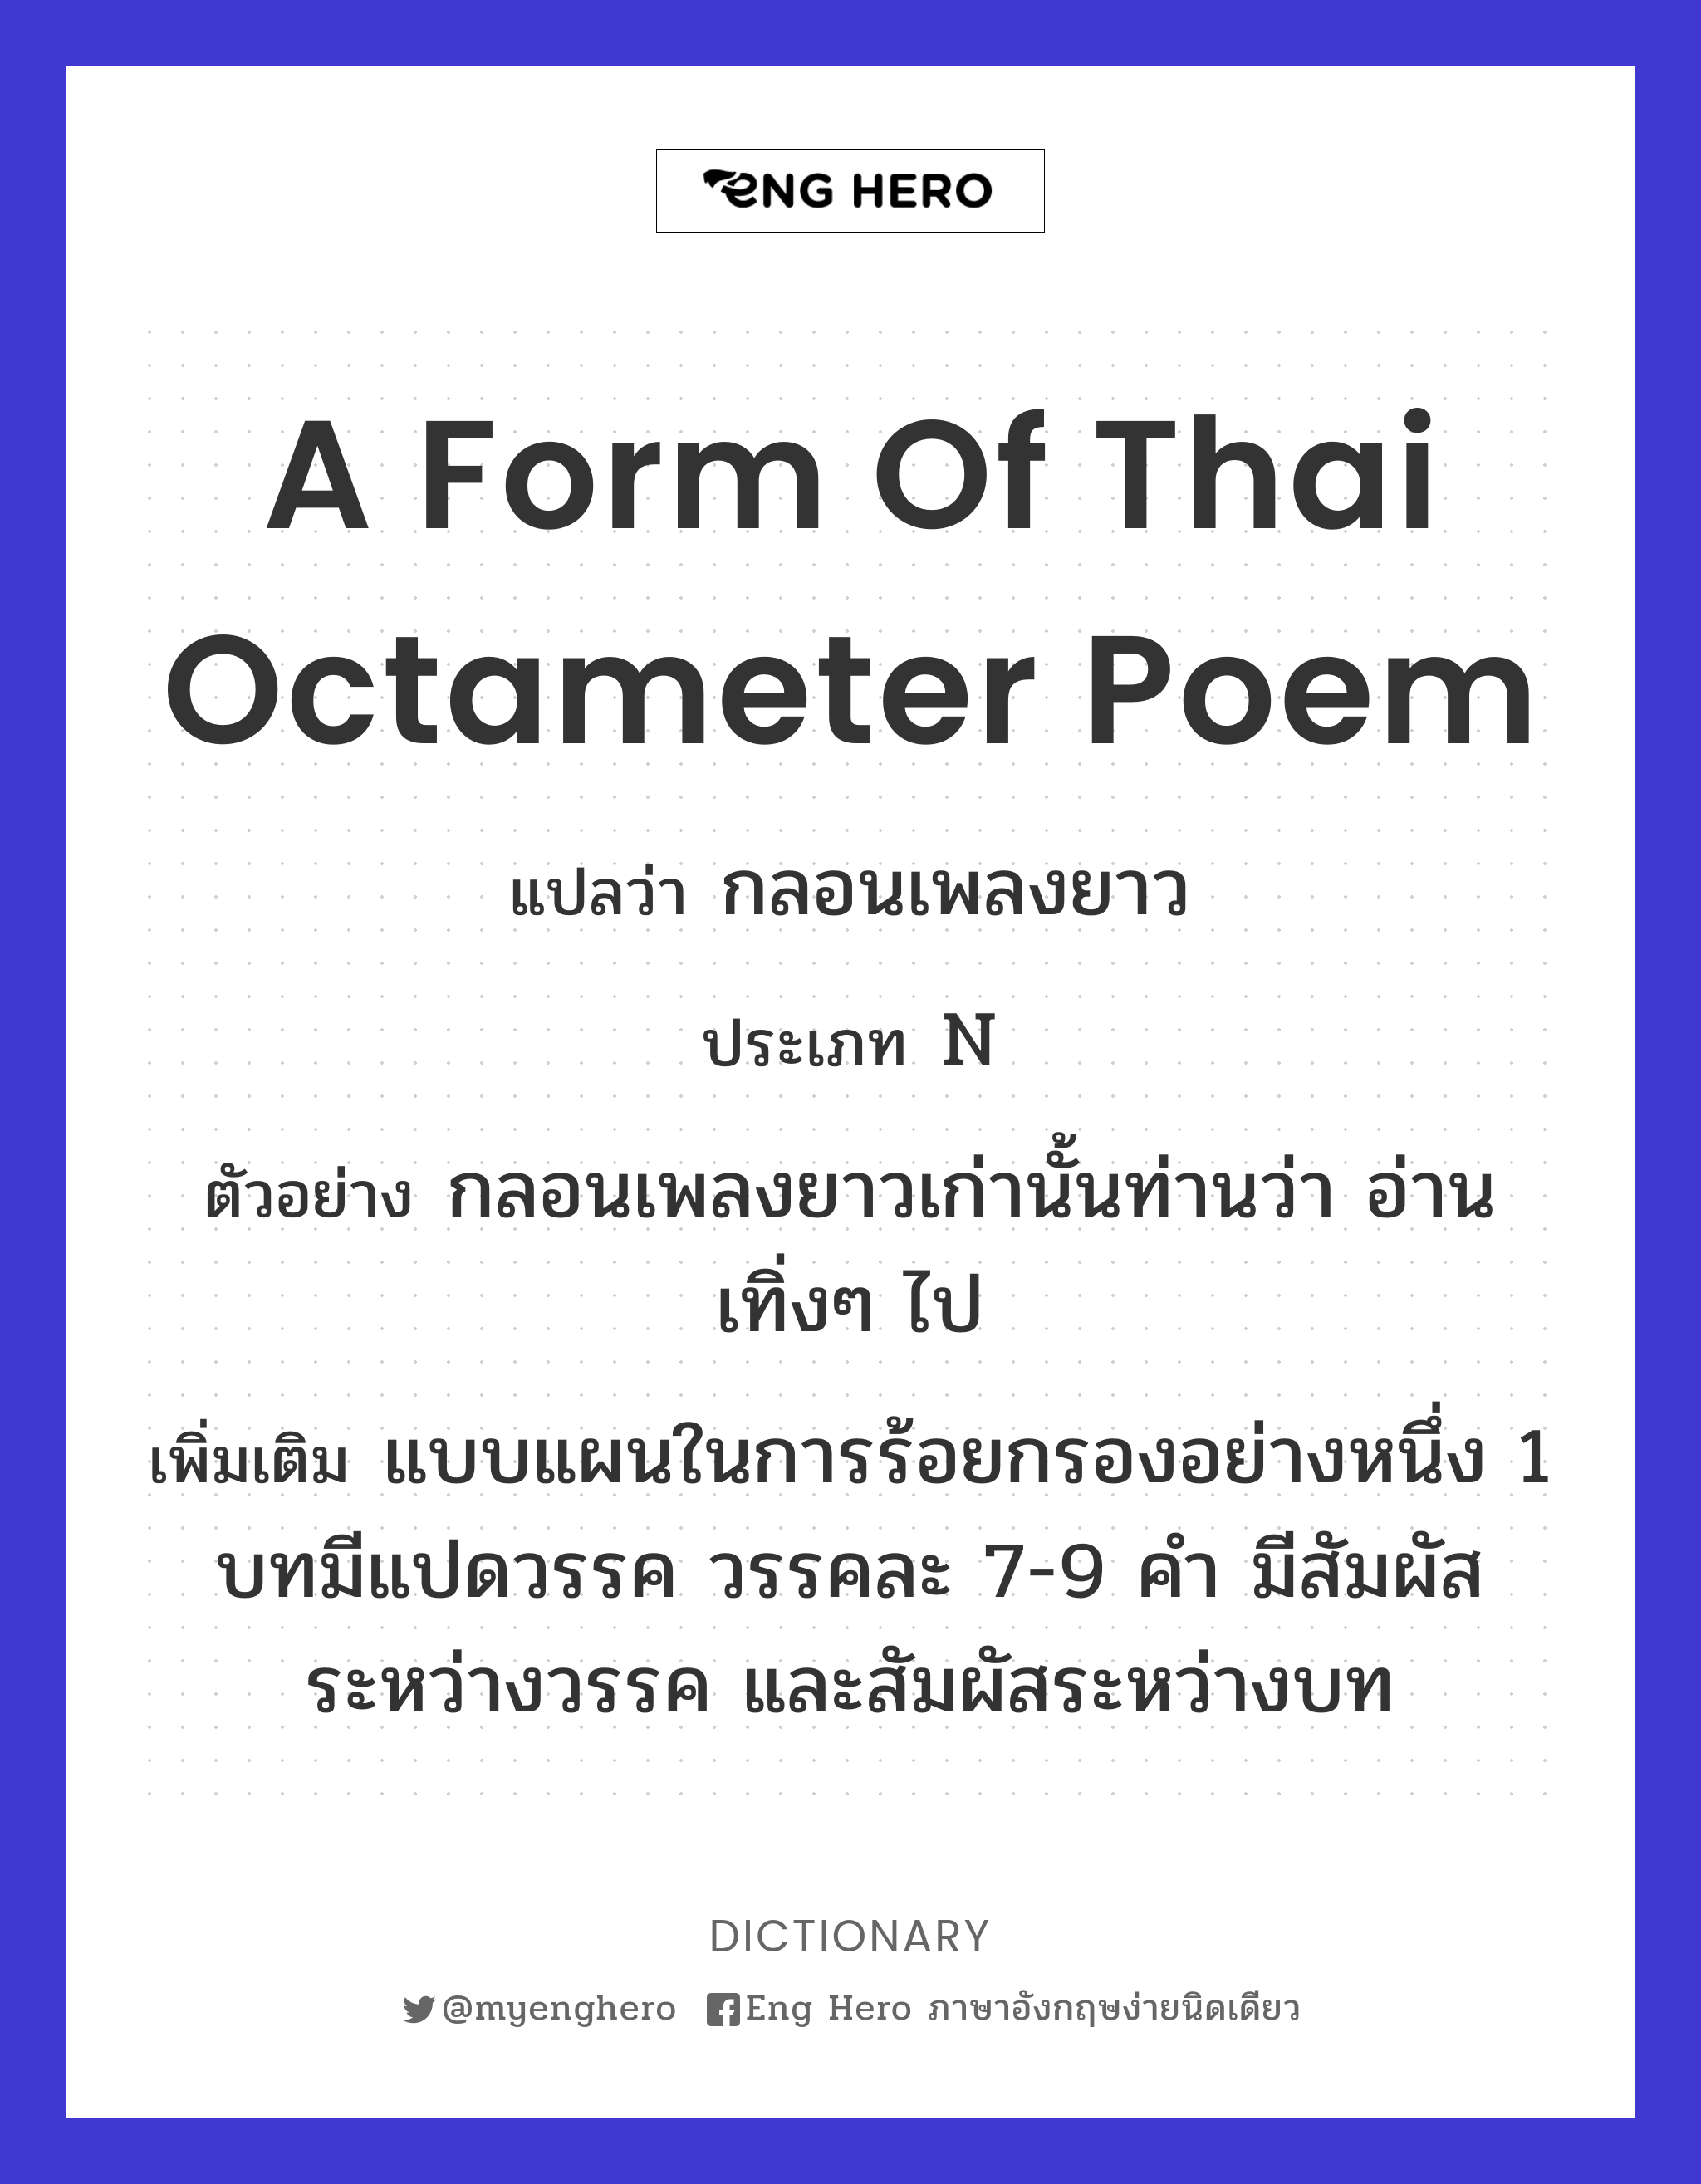 a form of Thai octameter poem